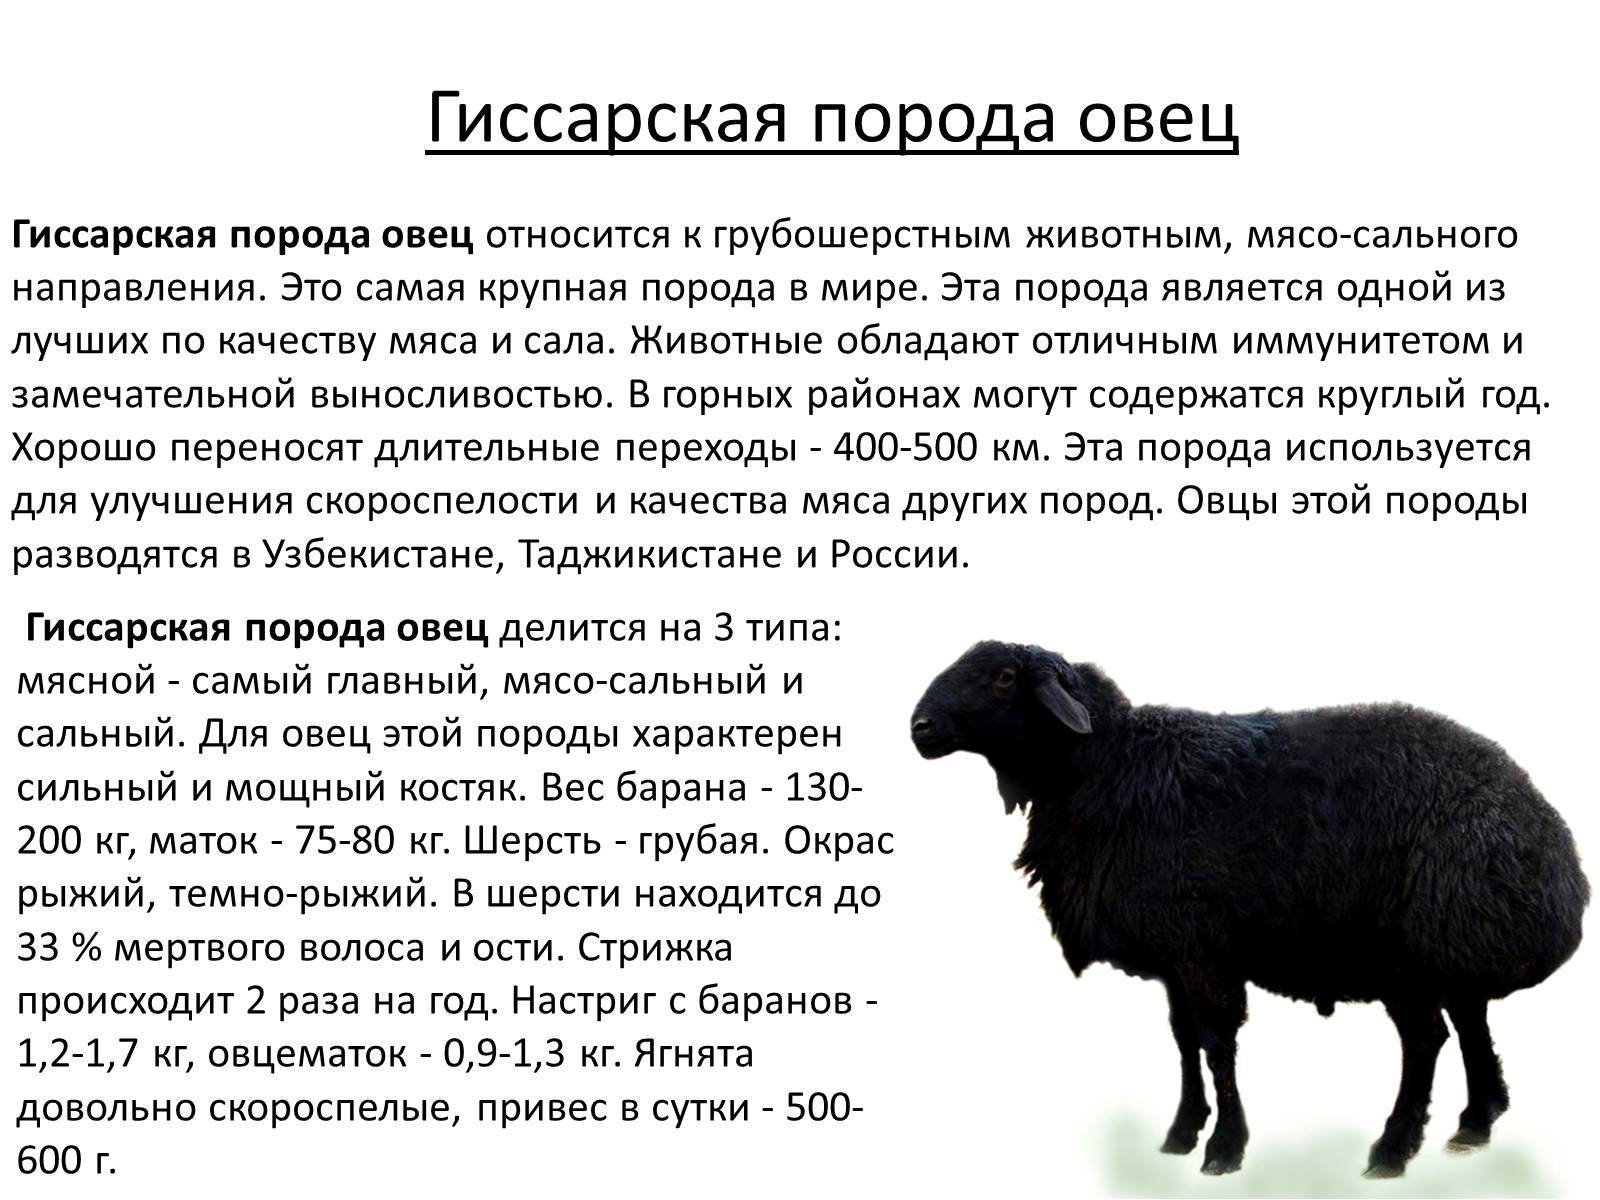 Ближайшие предки домашней овцы: как называются, где распространены дикие животные